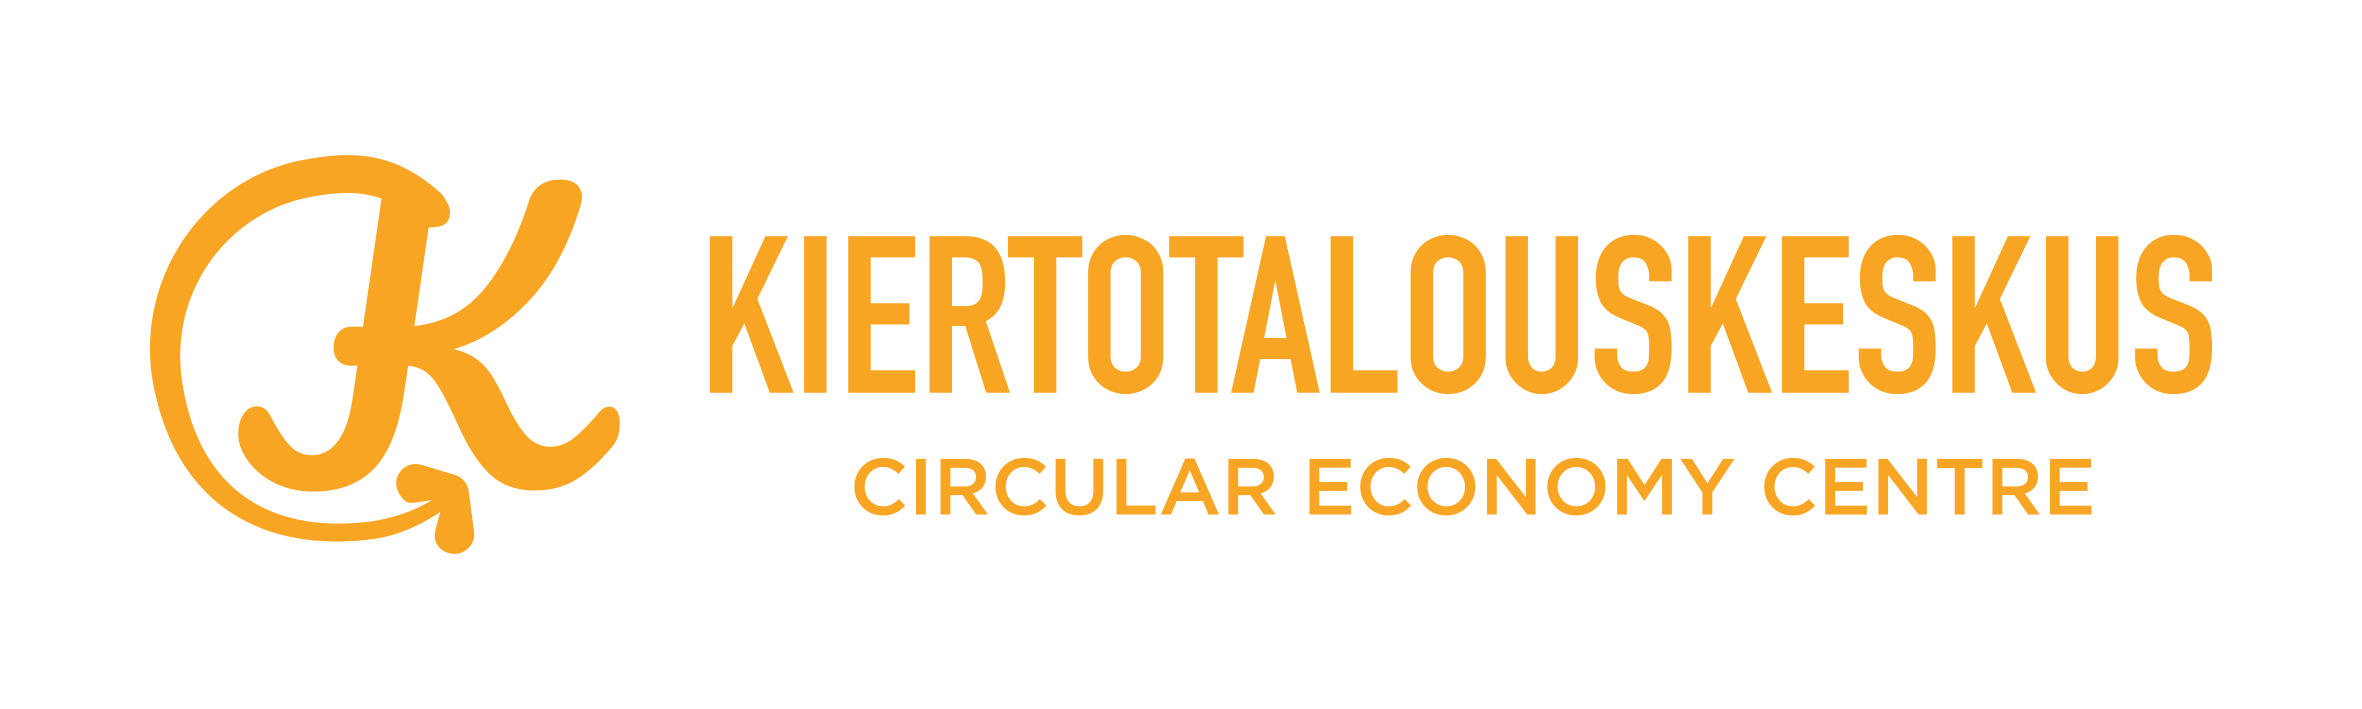 circulareconomycenter_logo